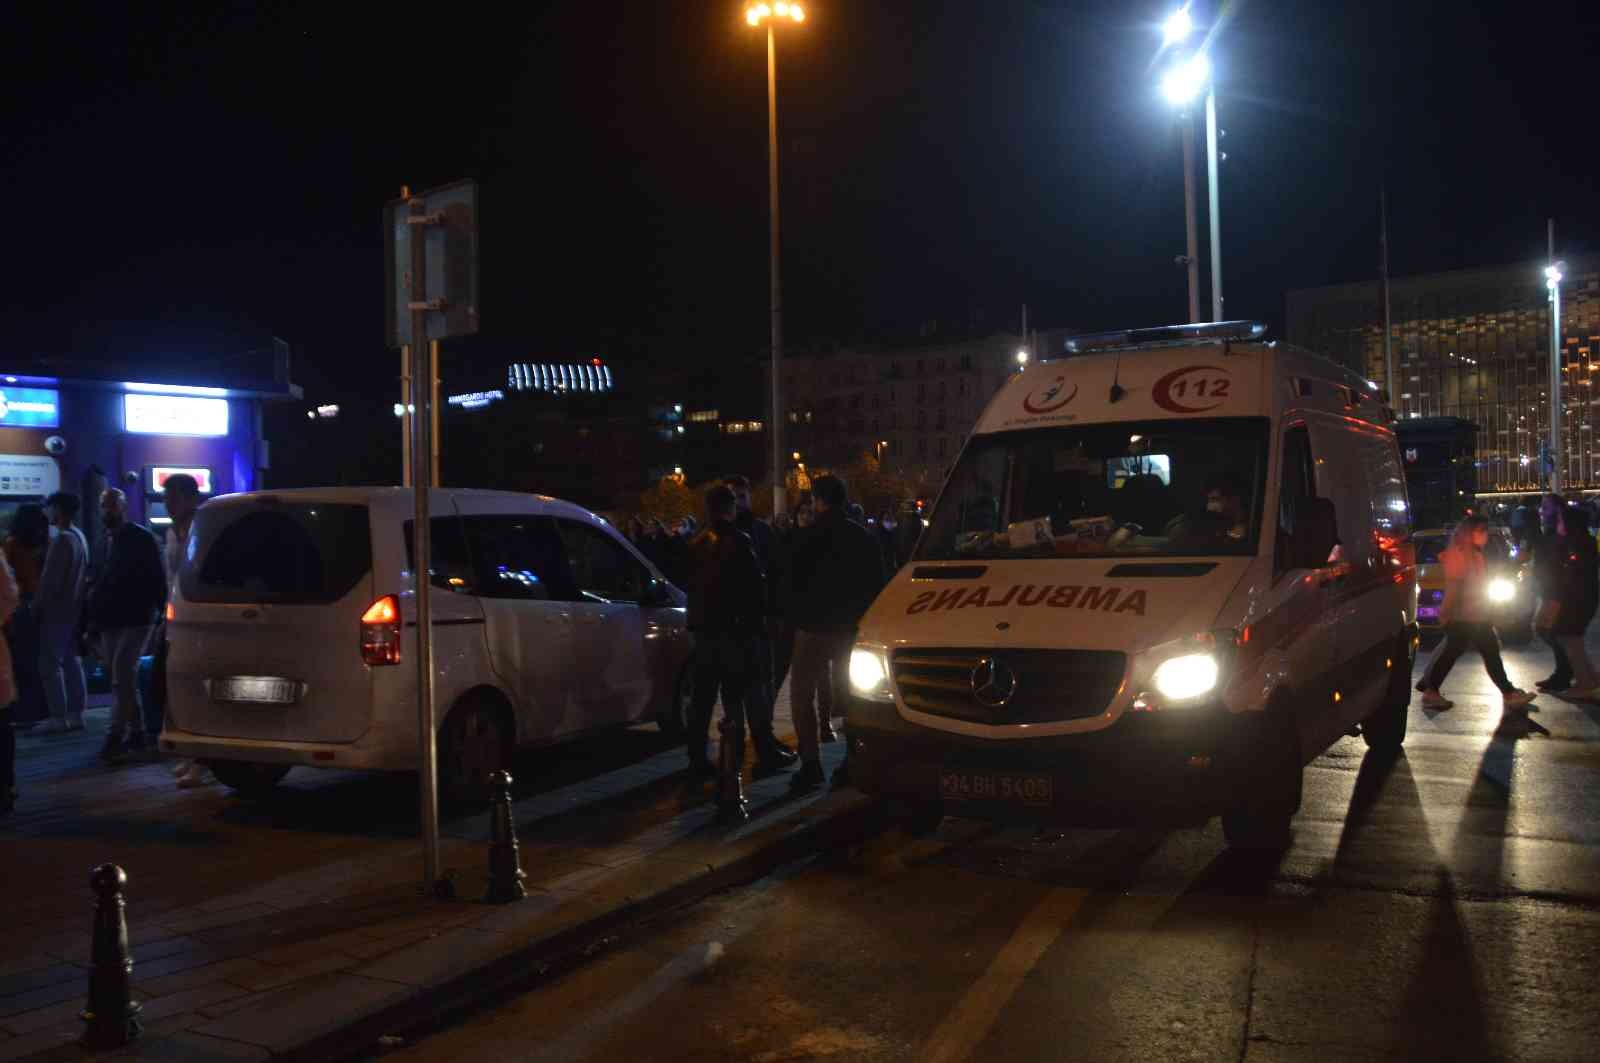 Taksim’de bıçakla bacağından yaralanan şahıs hastaneye kaldırıldı #istanbul